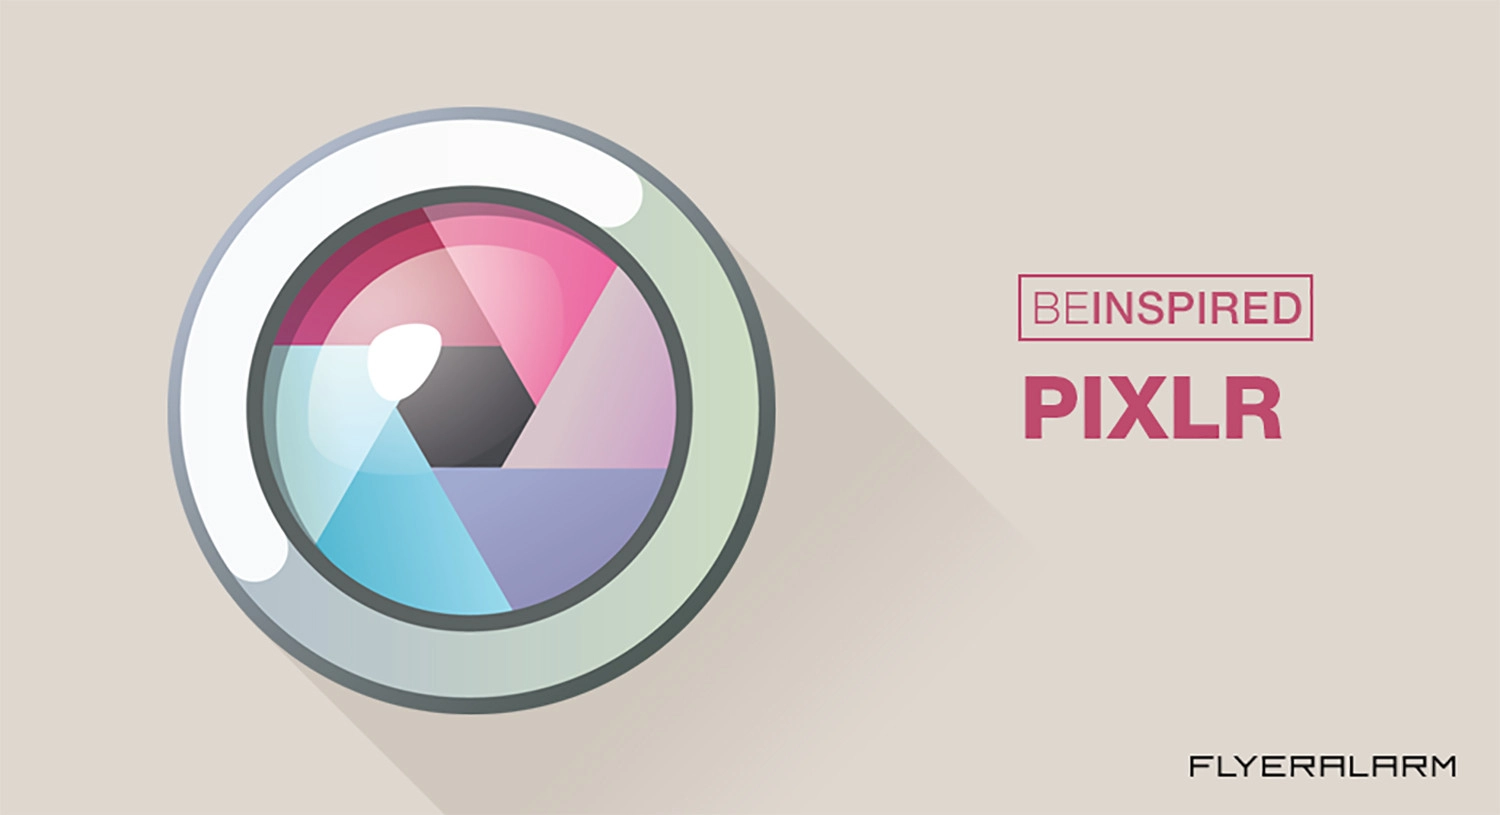 Pixlr mang lại kĩ năng sửa đổi thường xuyên nghiệp